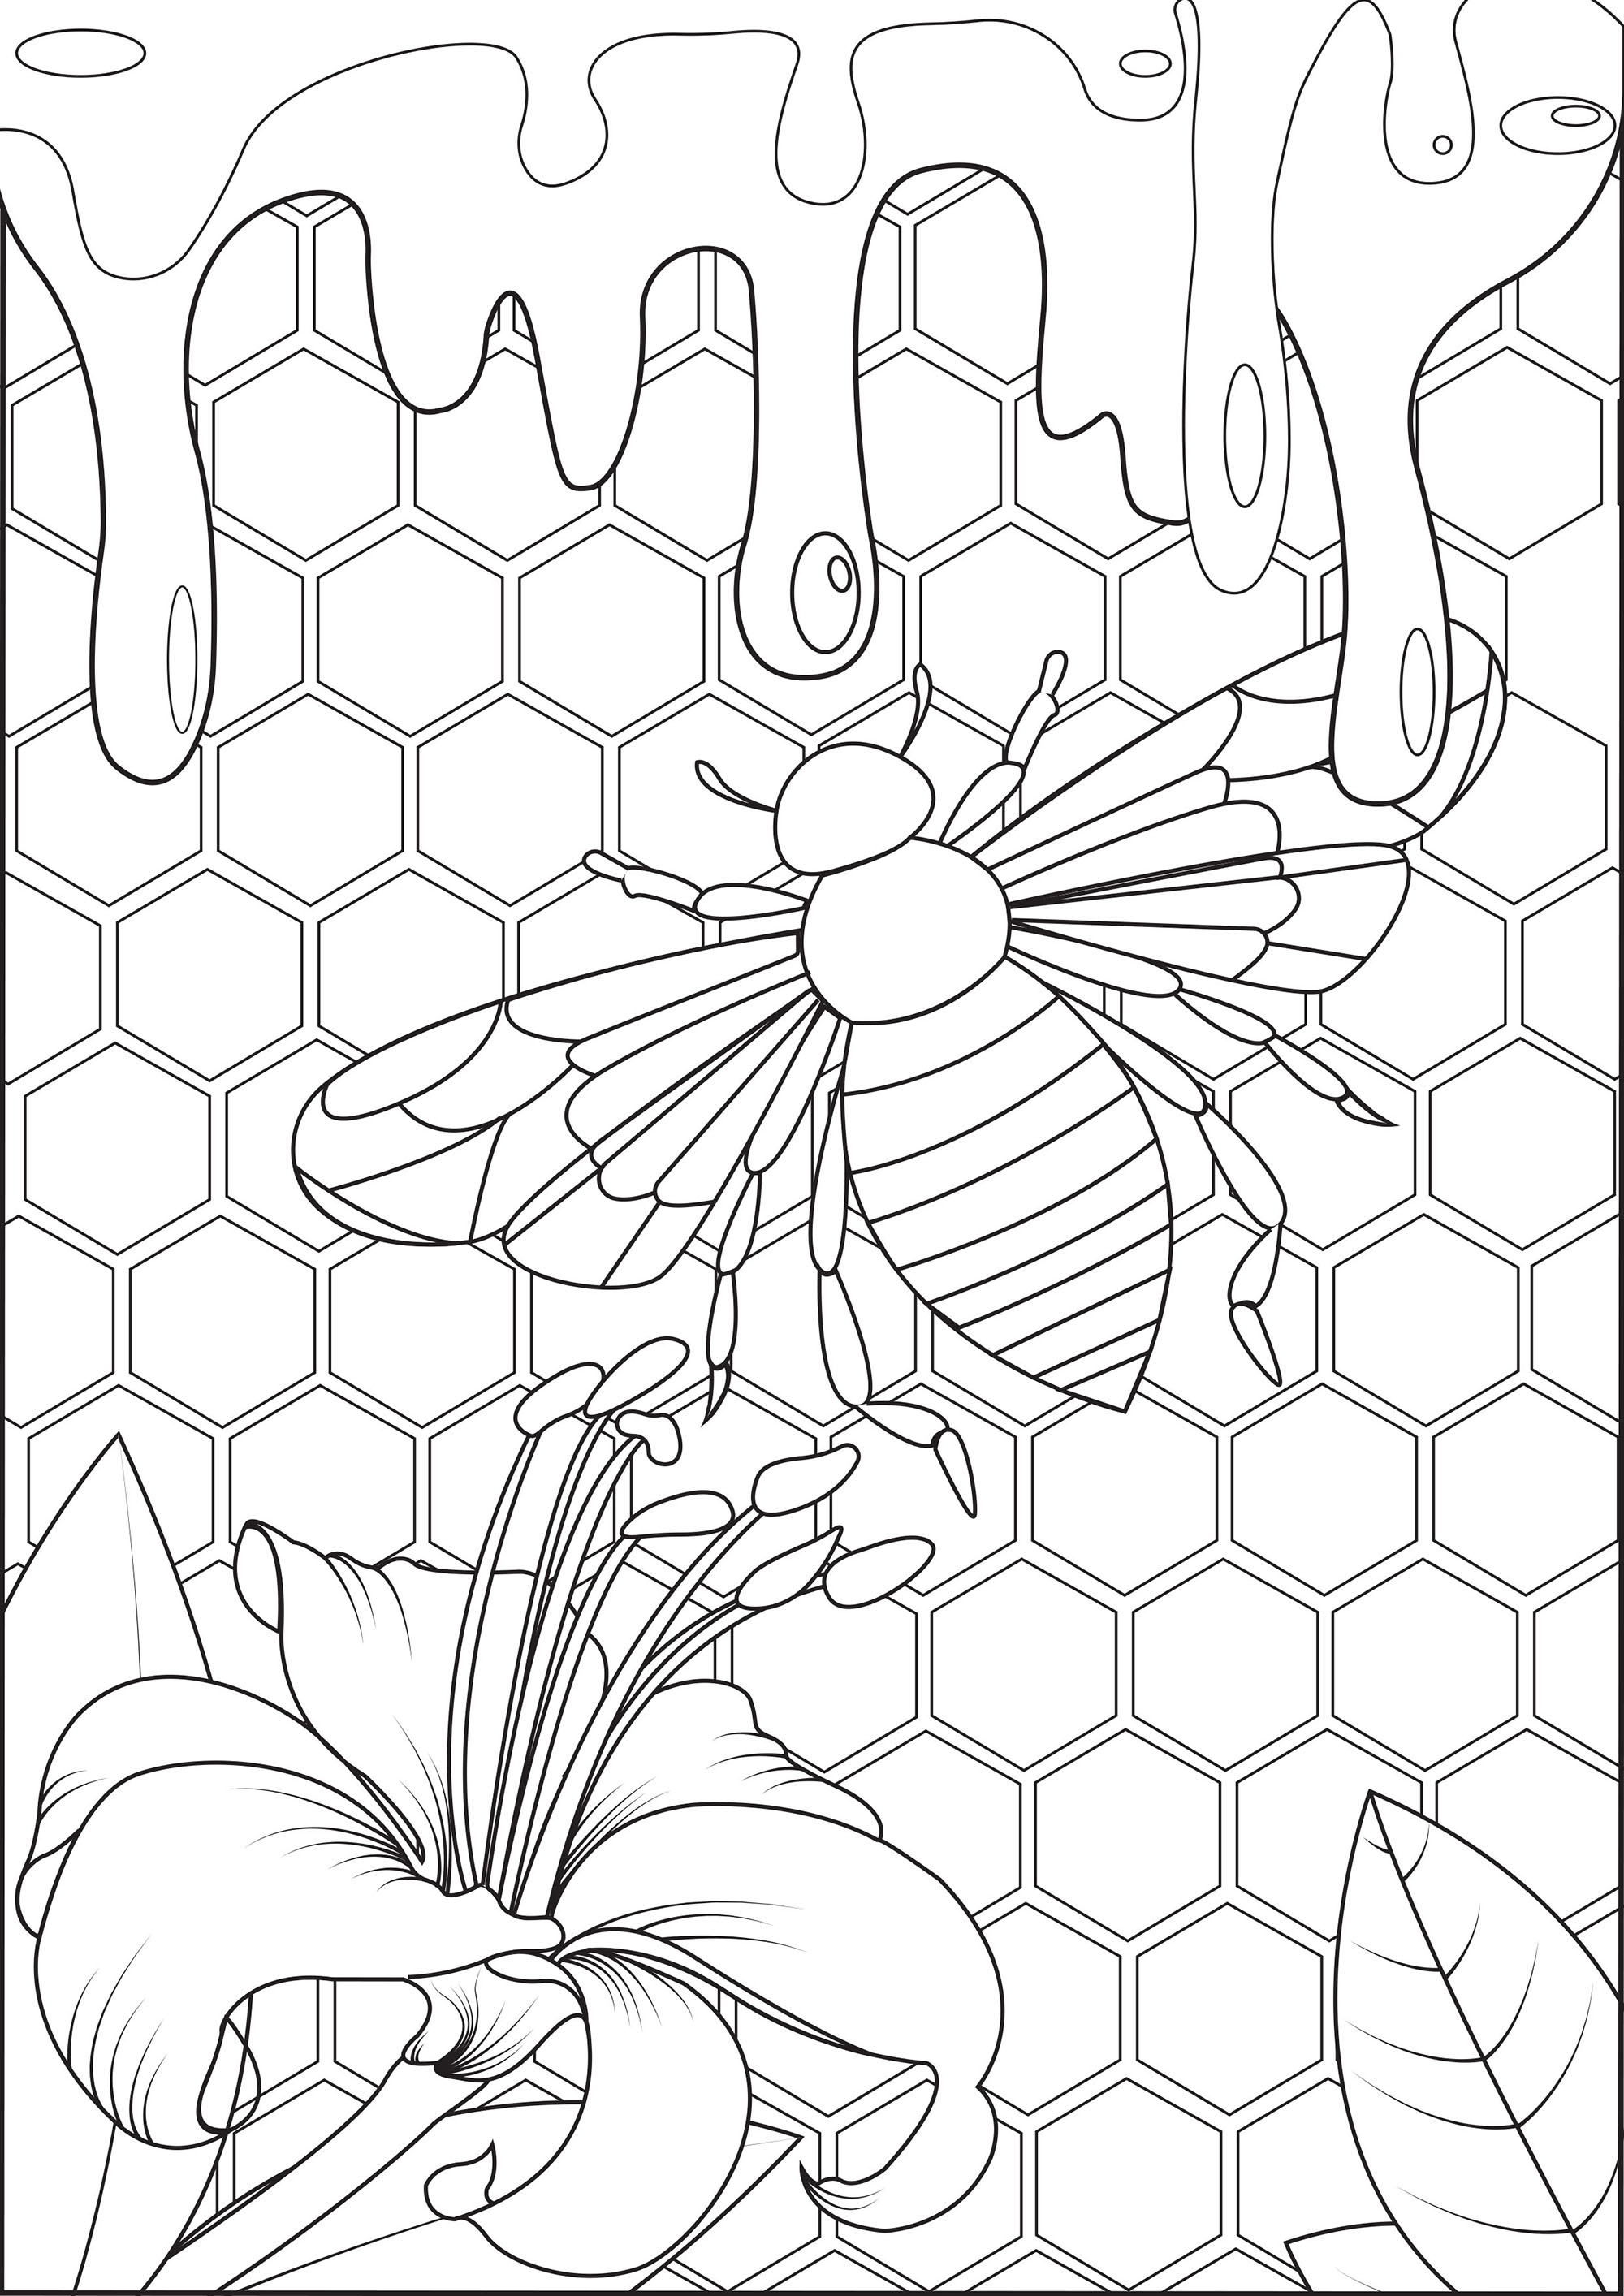 Mergulhe no coração da colmeia e prove este mel fresco!. Este desenho para colorir é um convite para mergulhar no mundo das abelhas e descobrir o seu mundo .., Artista : Arwen